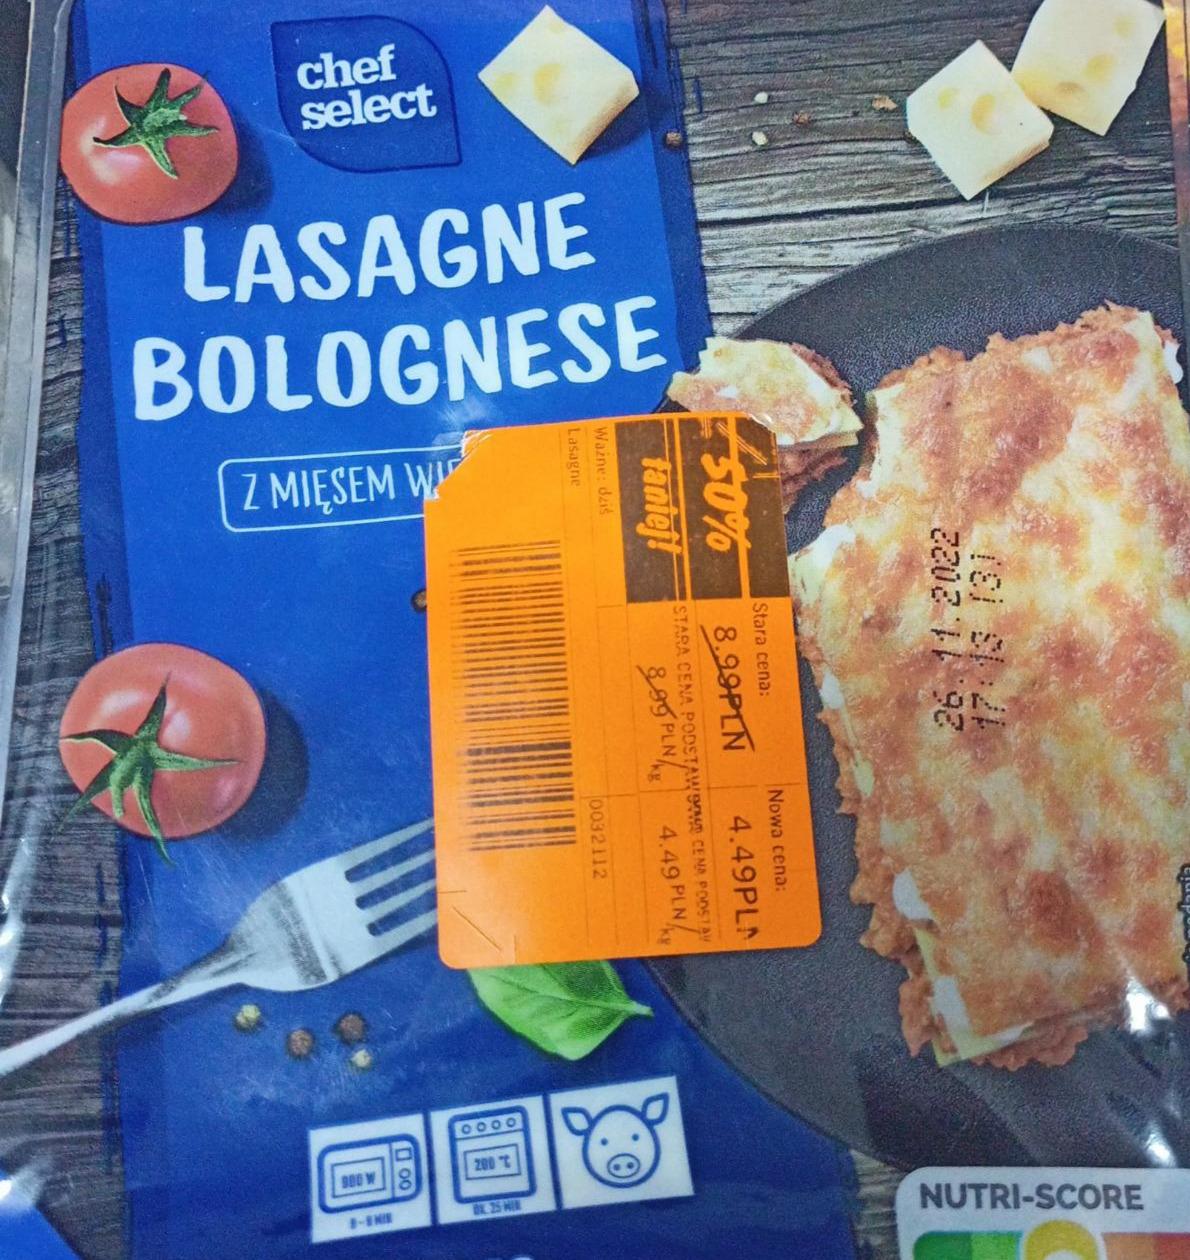 wieprzowym odżywcze mięsem i z - kJ kalorie, Chef wartości Select Lasagne bolognese